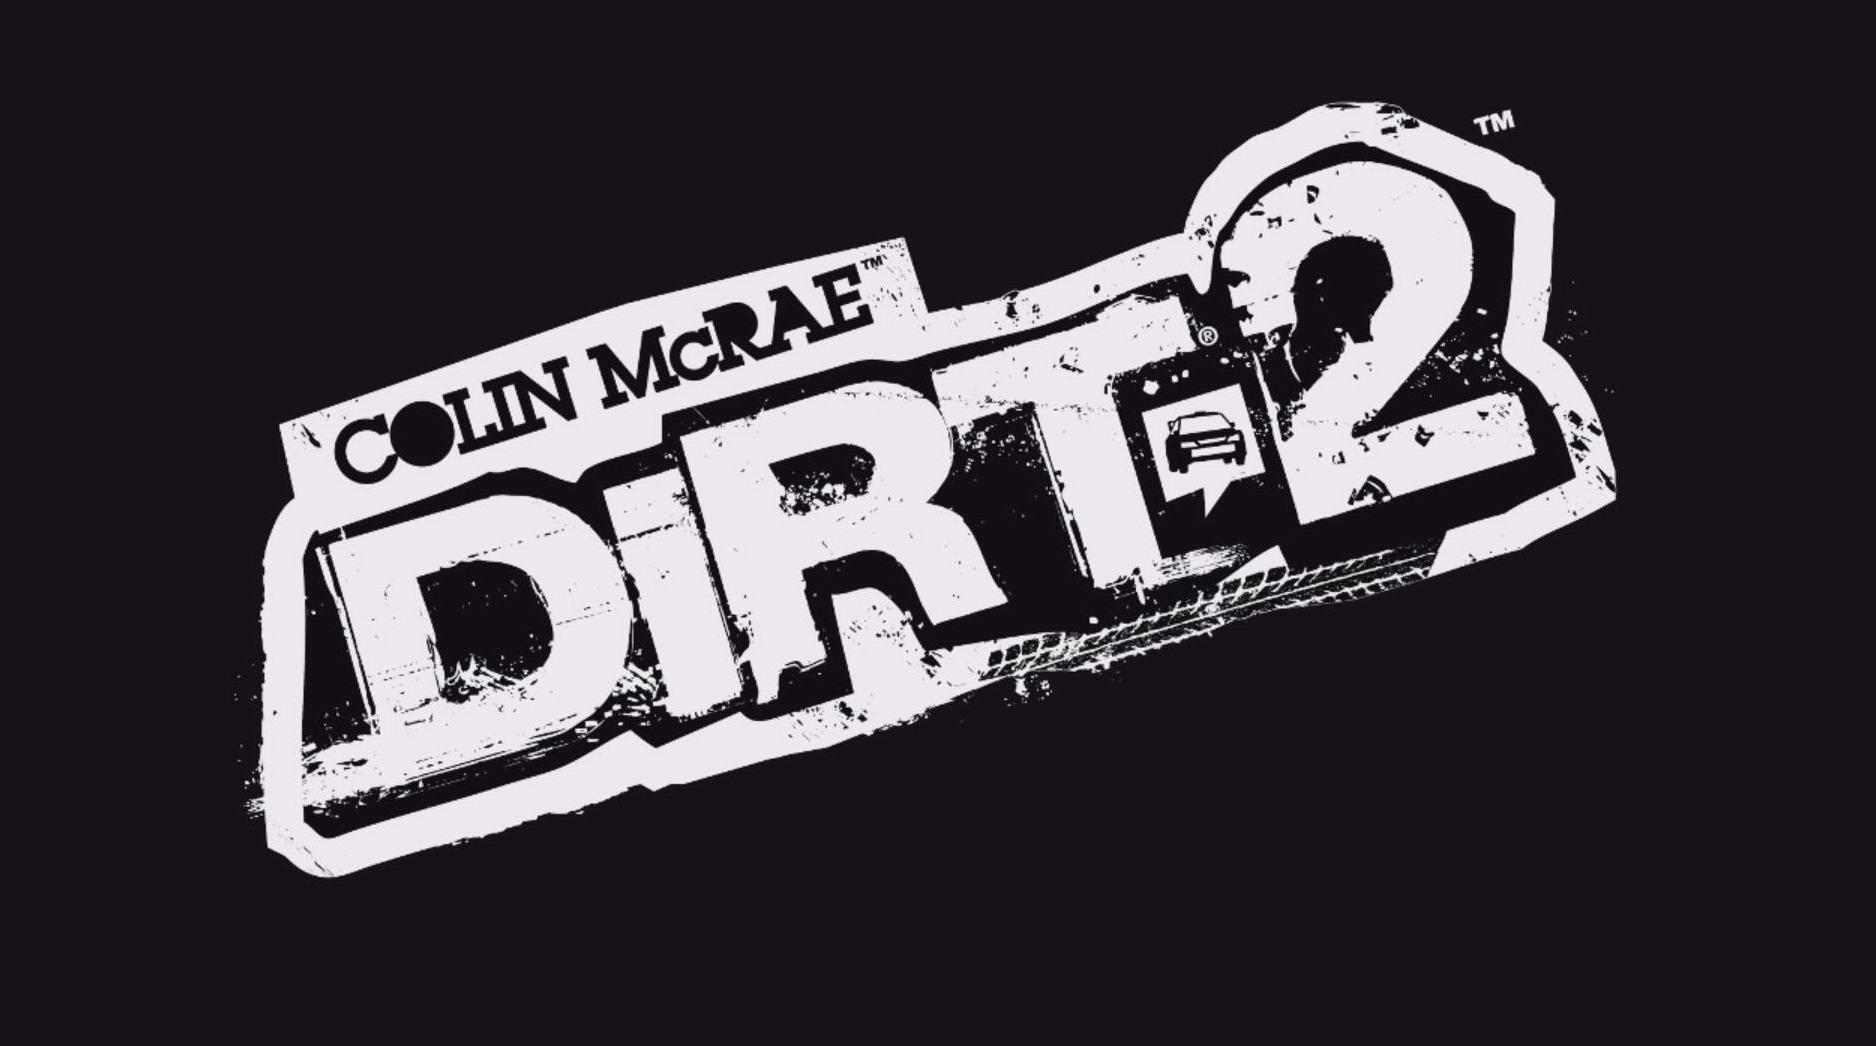 0 25 1024. Dirt 2. Dirt логотип. Черно белые логотипы игр. Dirt 2 иконка.